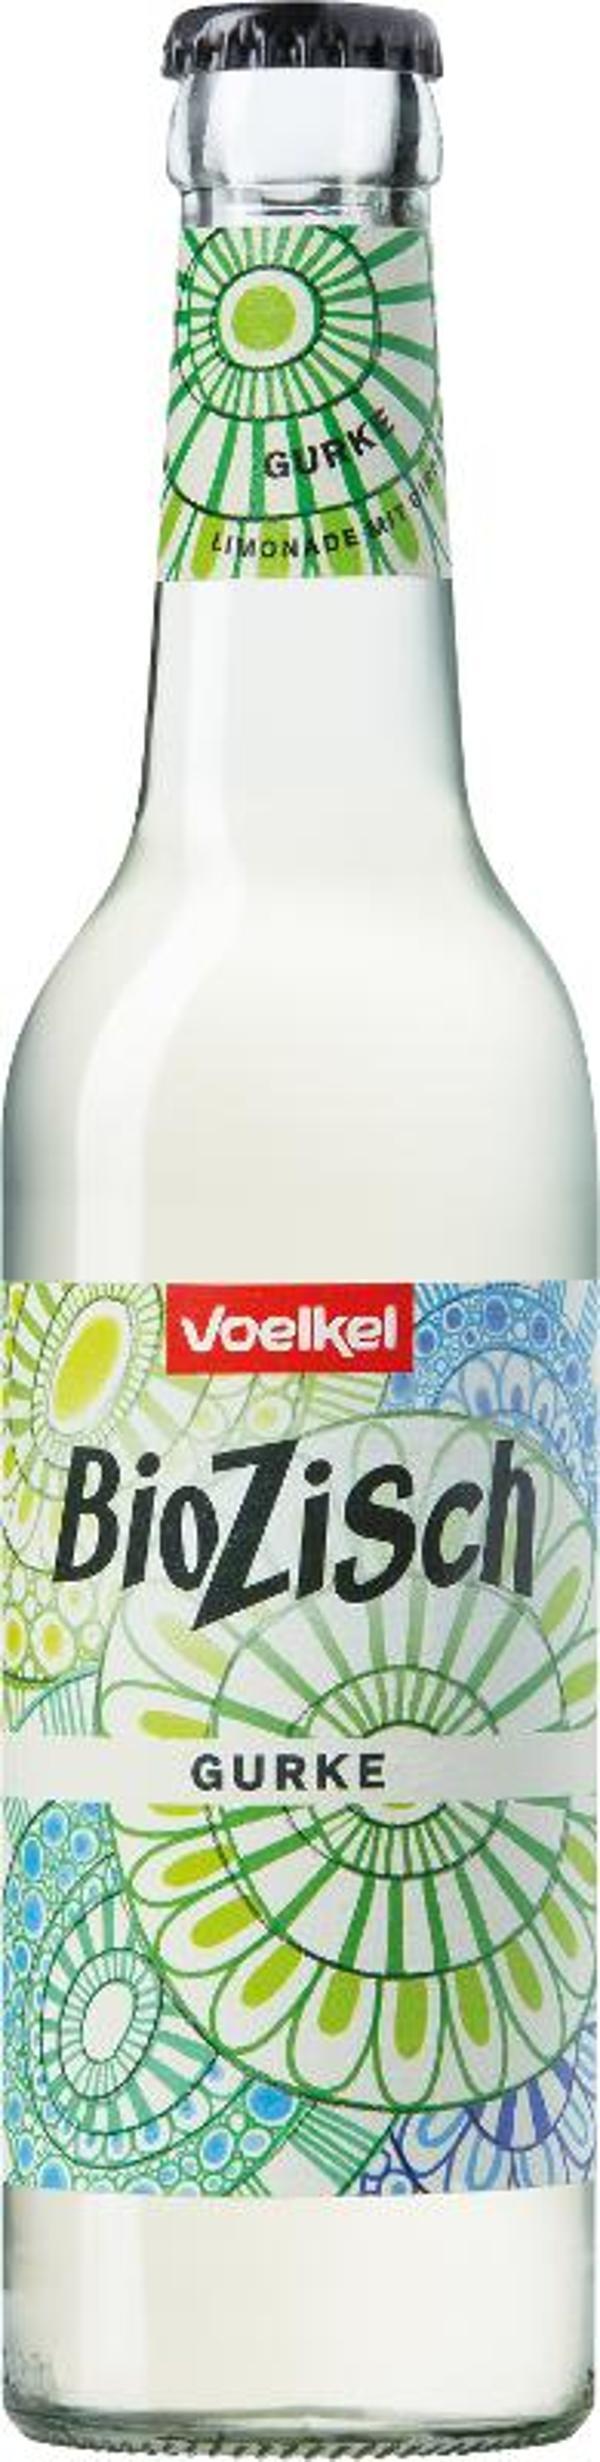 Produktfoto zu BioZisch Gurke 12*0,33l